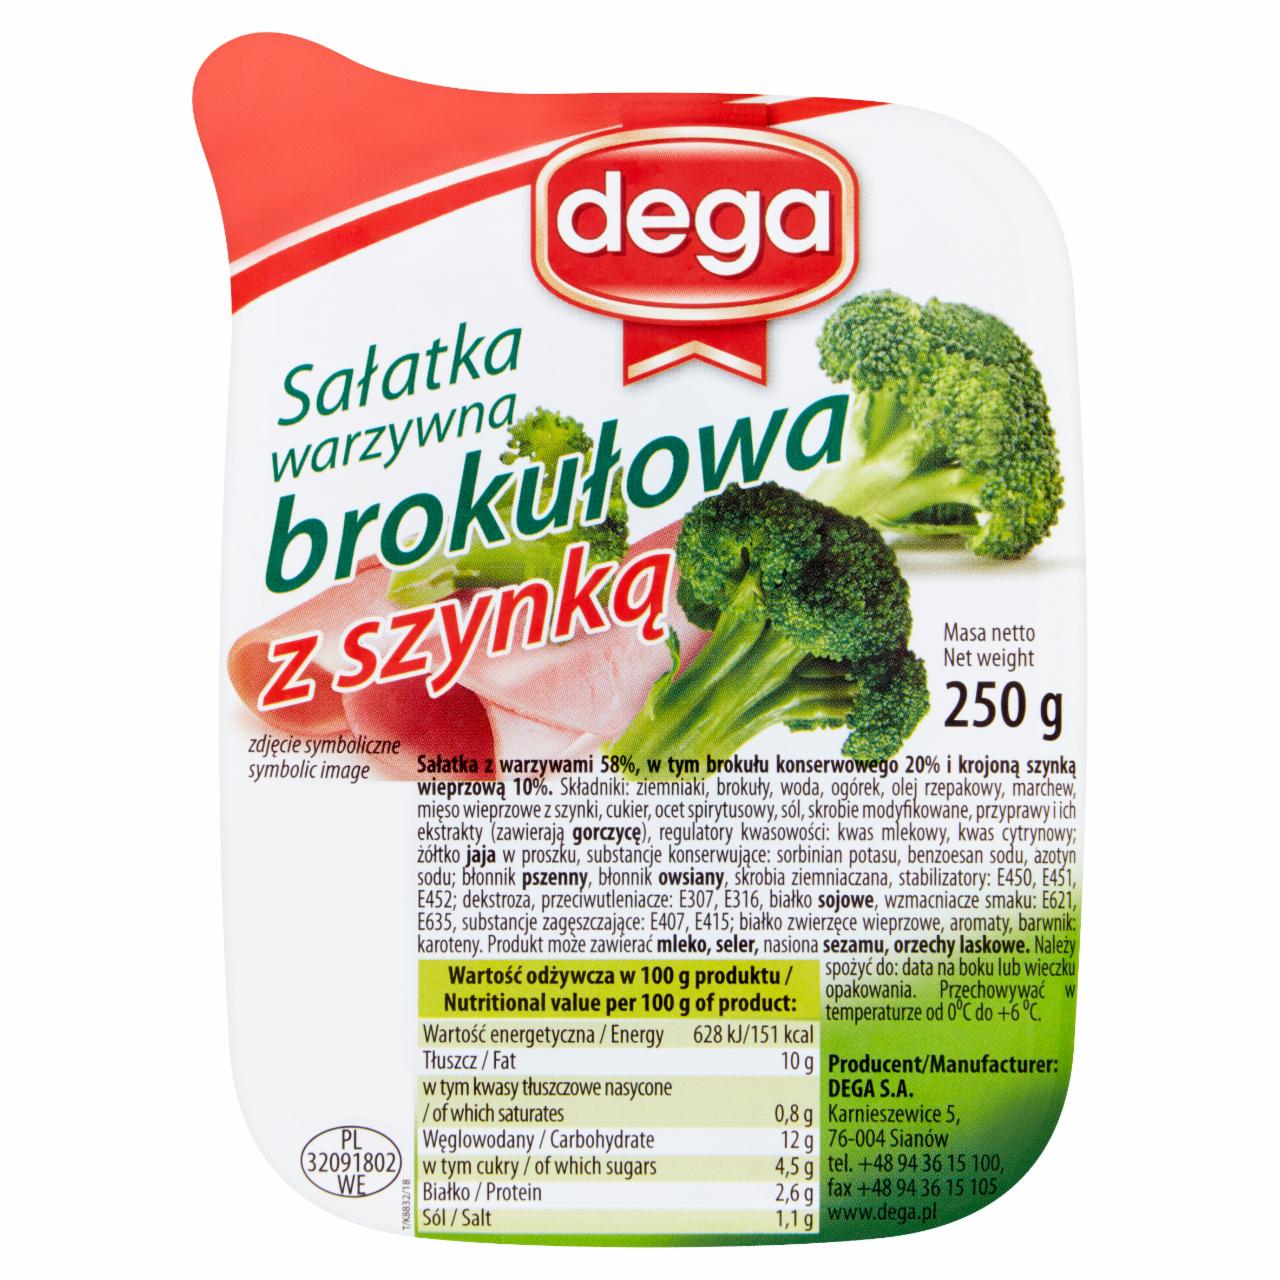 Zdjęcia - Sałatka warzywna brokułową z szynką 250 g Dega